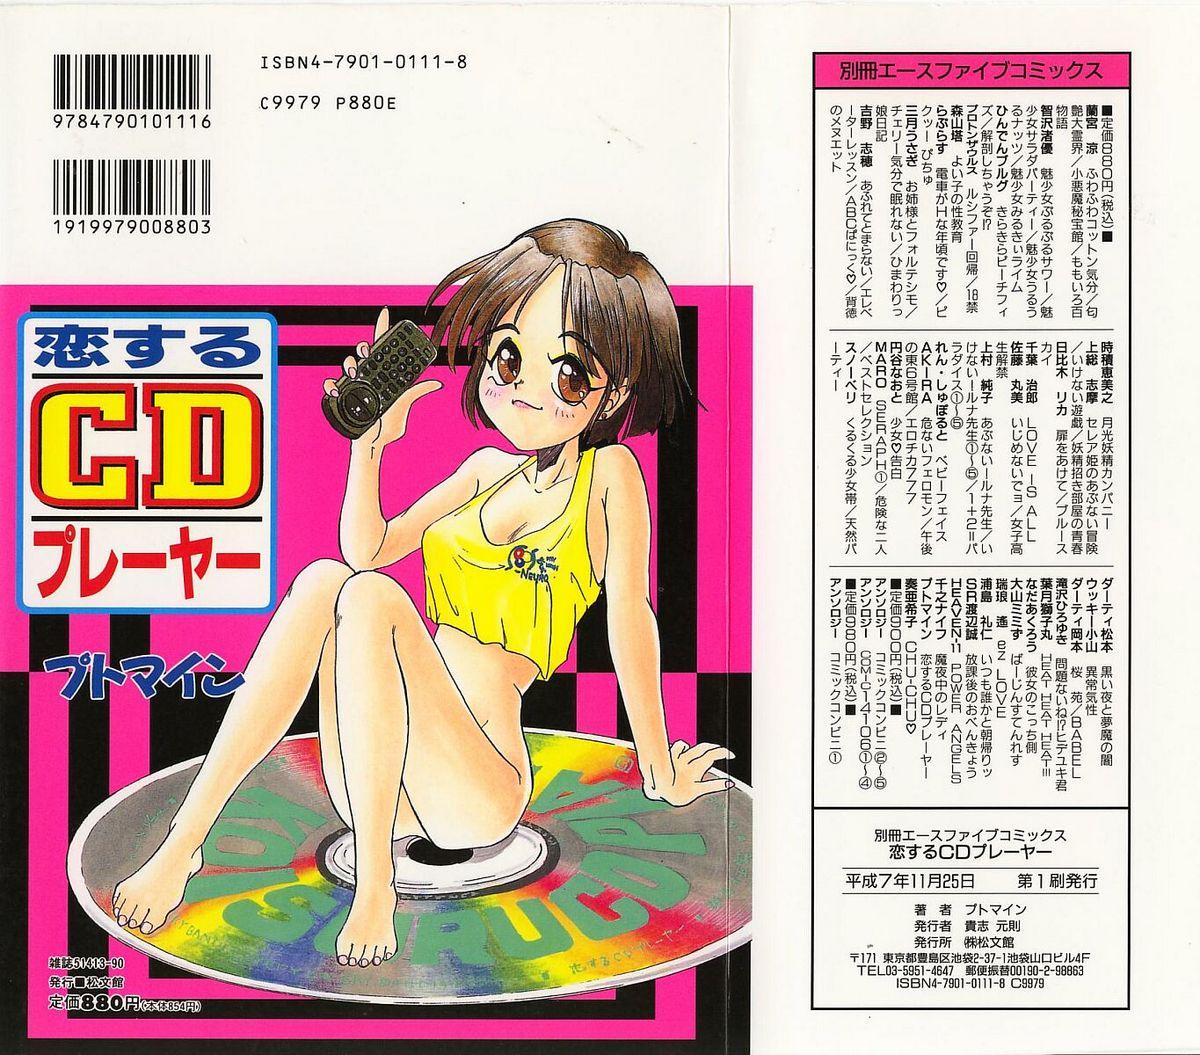 Koisuru CD Player 152